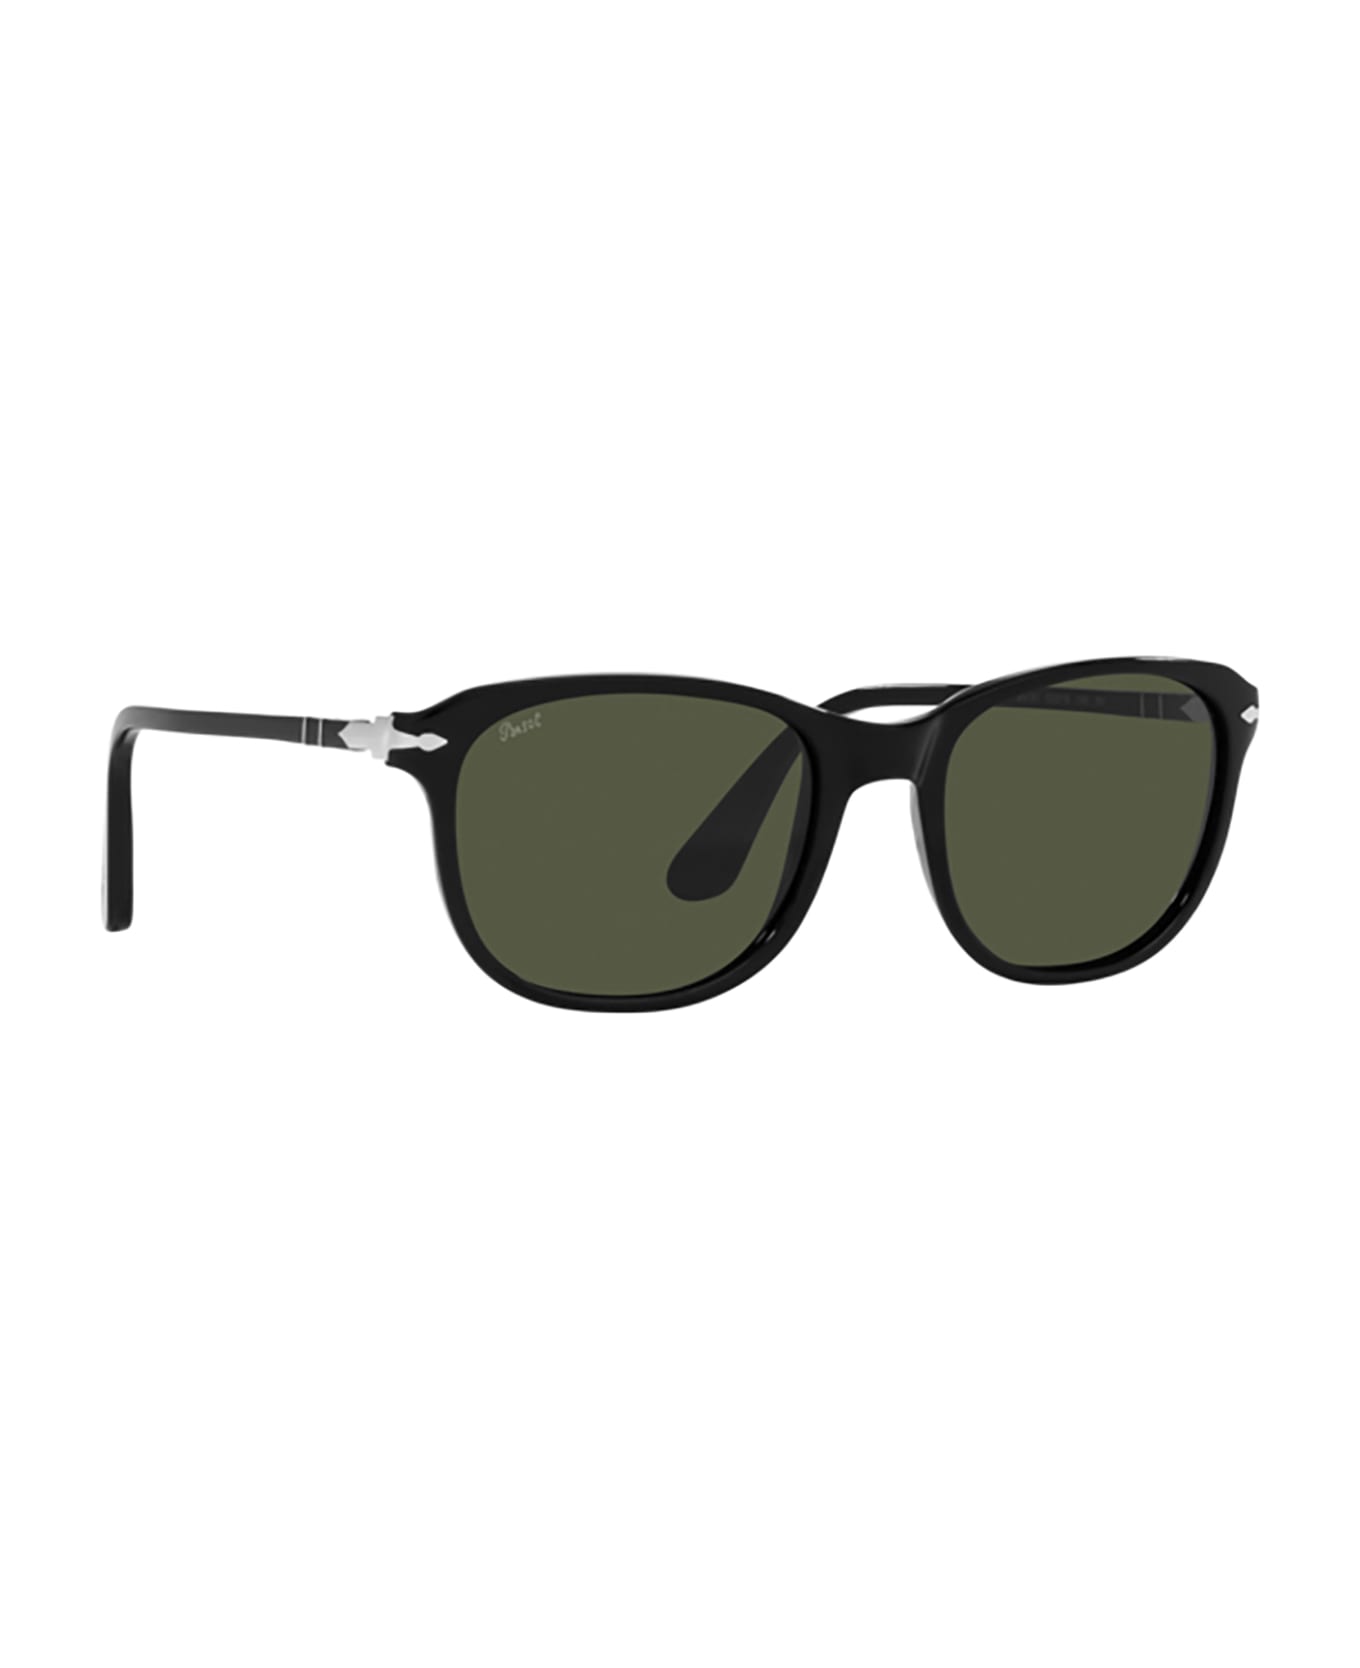 Persol Po1935s Black Sunglasses - Black